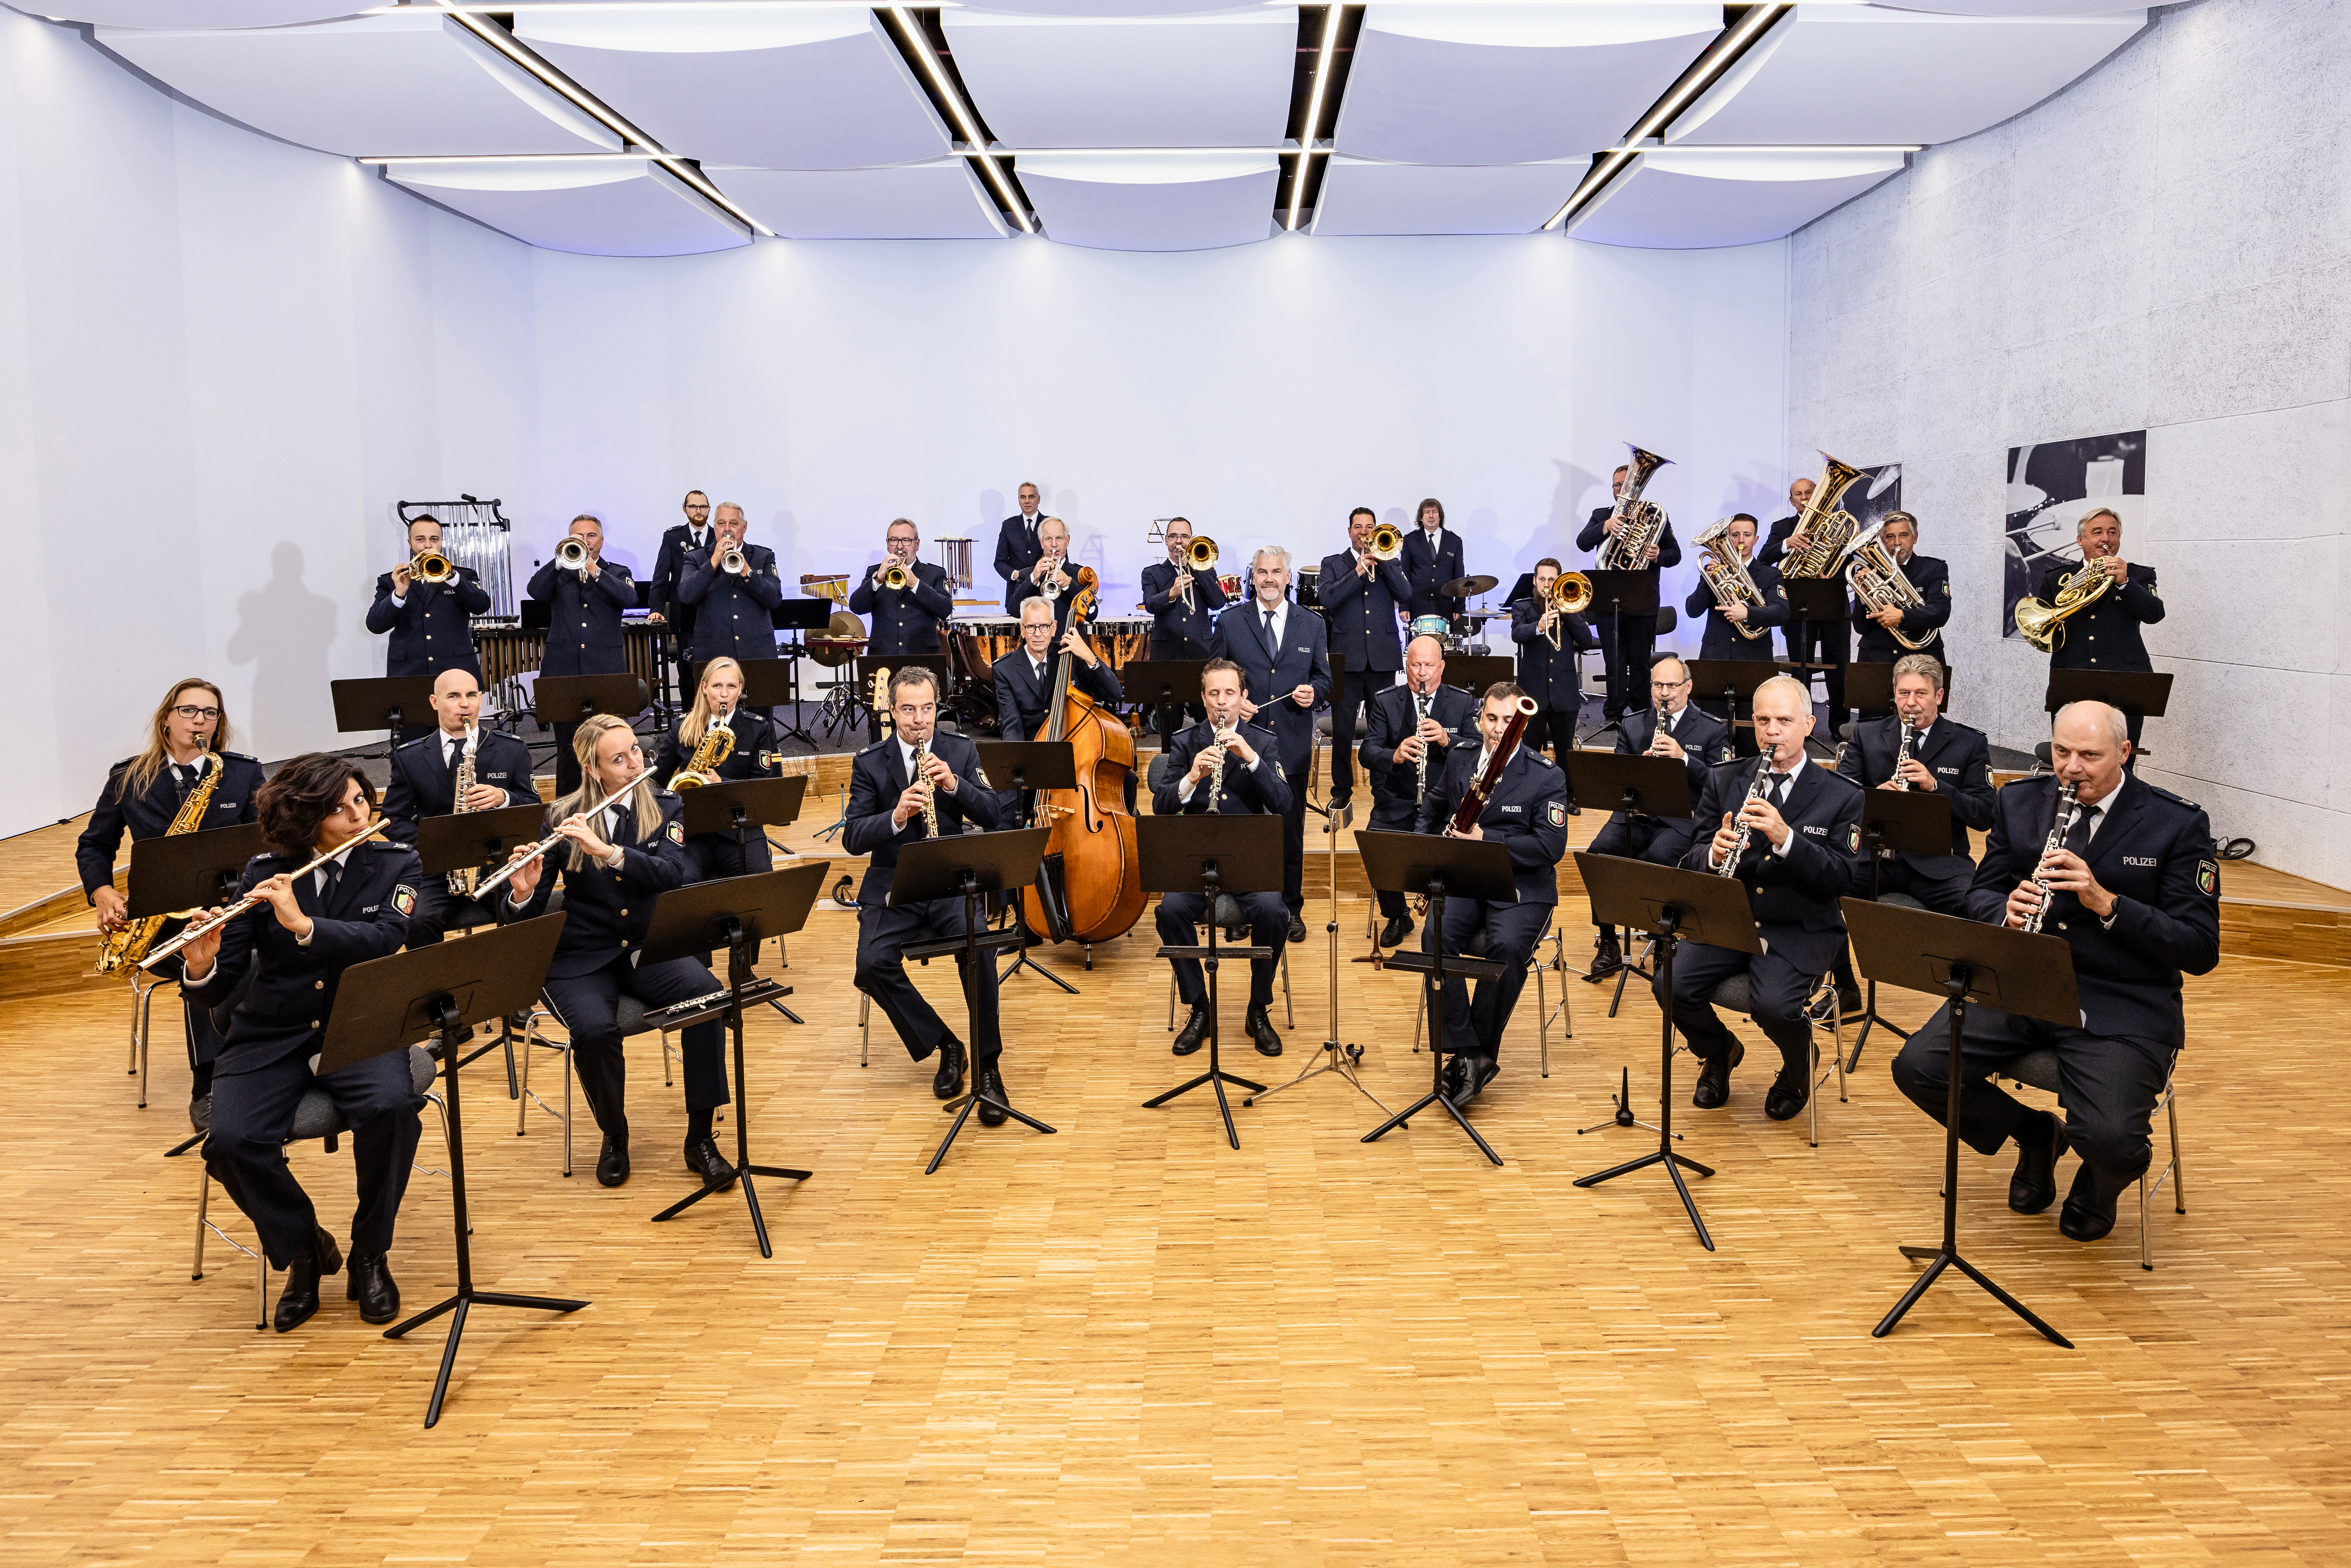 Landespolizeiorchester NRW